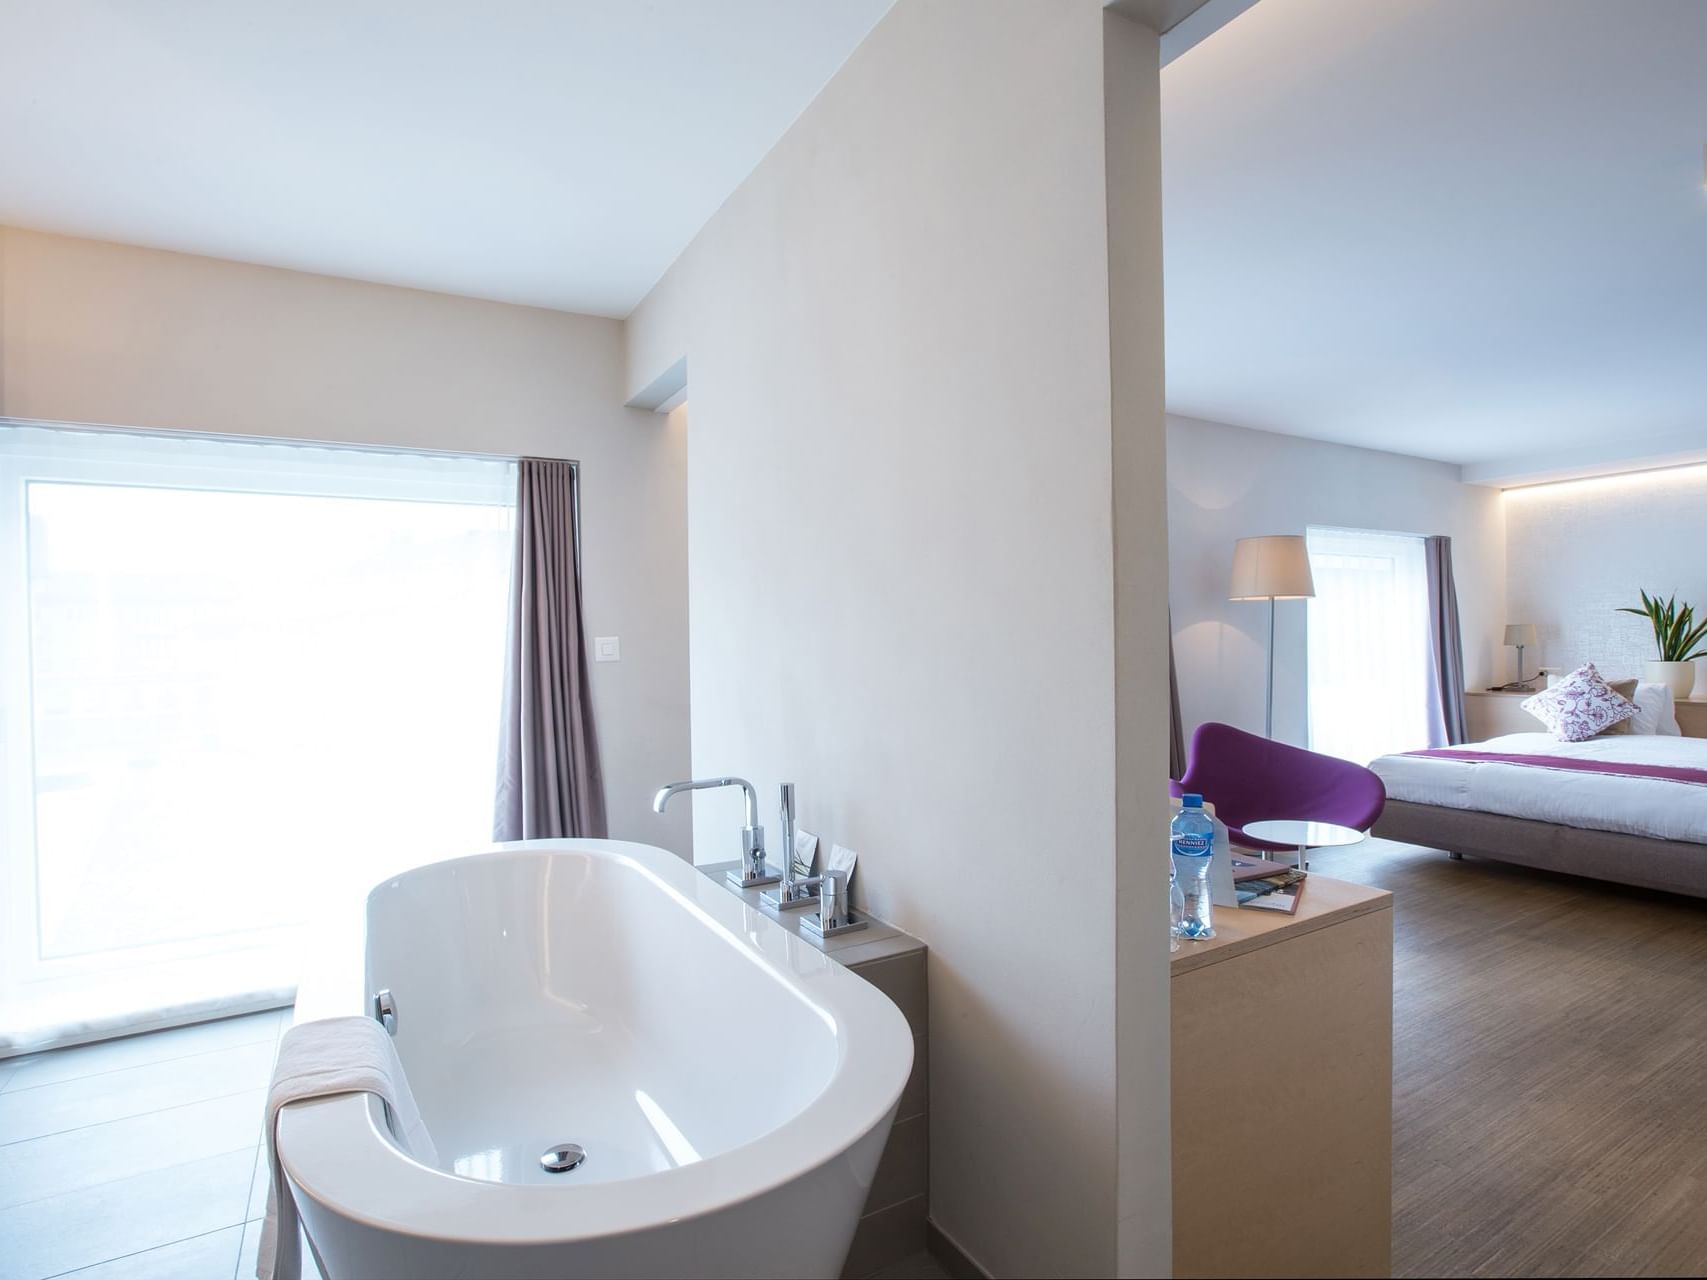 Bathroom & bedroom area in Junior suite at Best Western Hotel Spirgarten​​